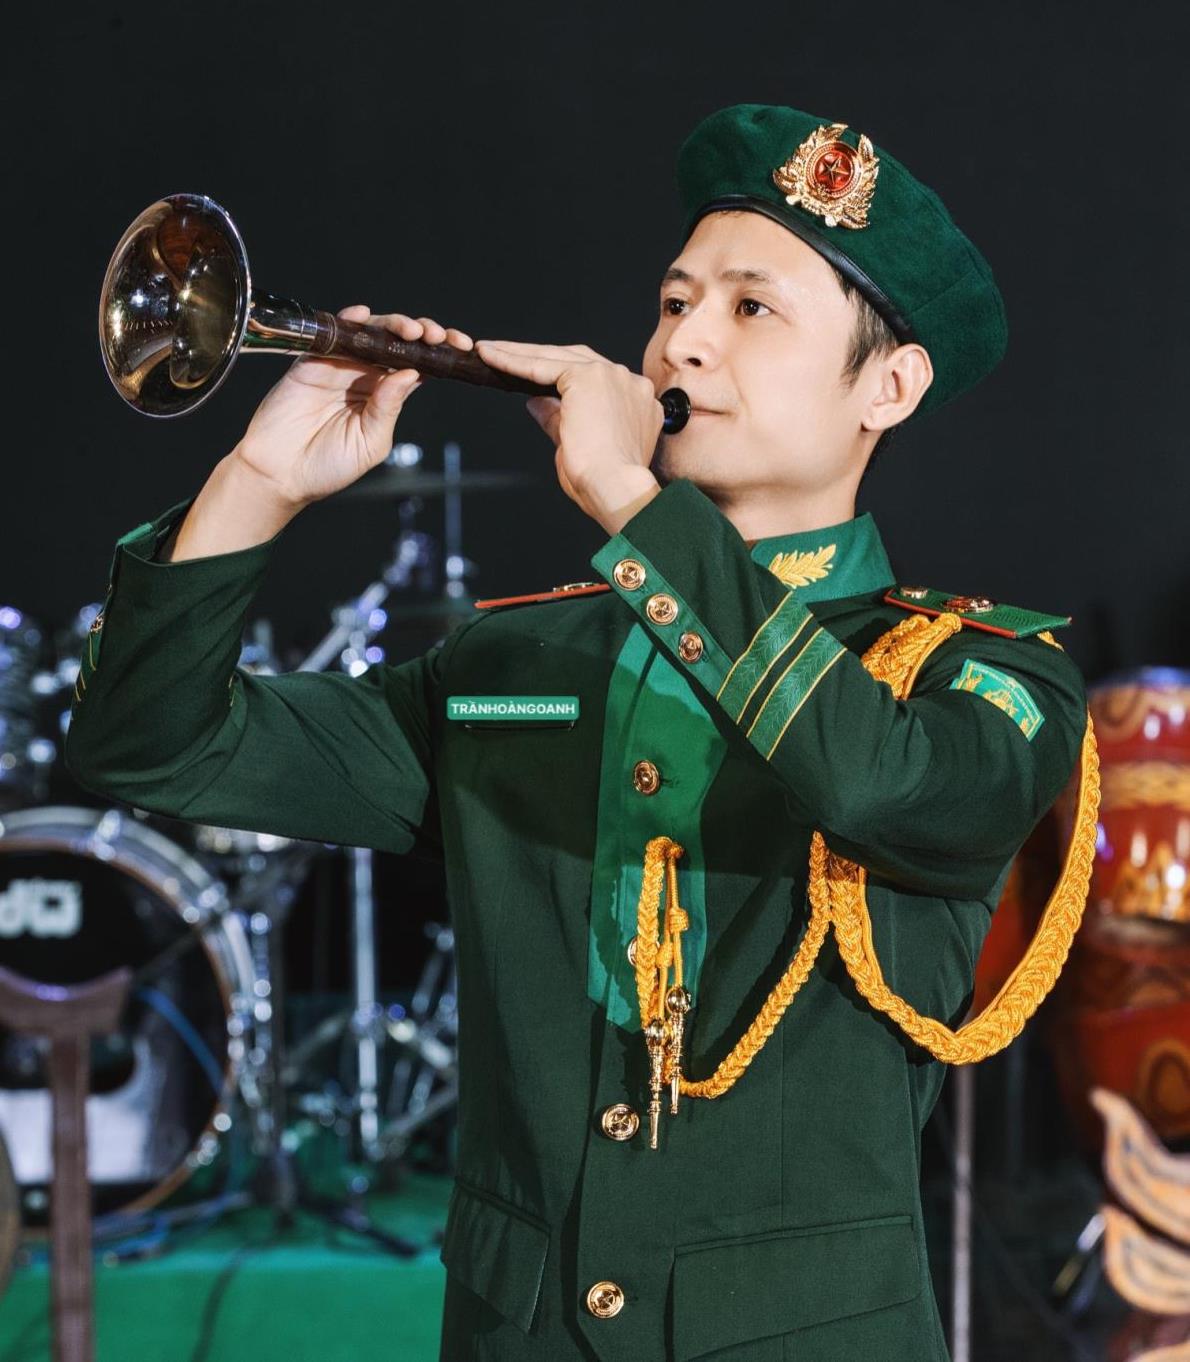 Chiến sĩ - Nghệ sĩ Trần Hoàng Oanh với cây kèn bầu